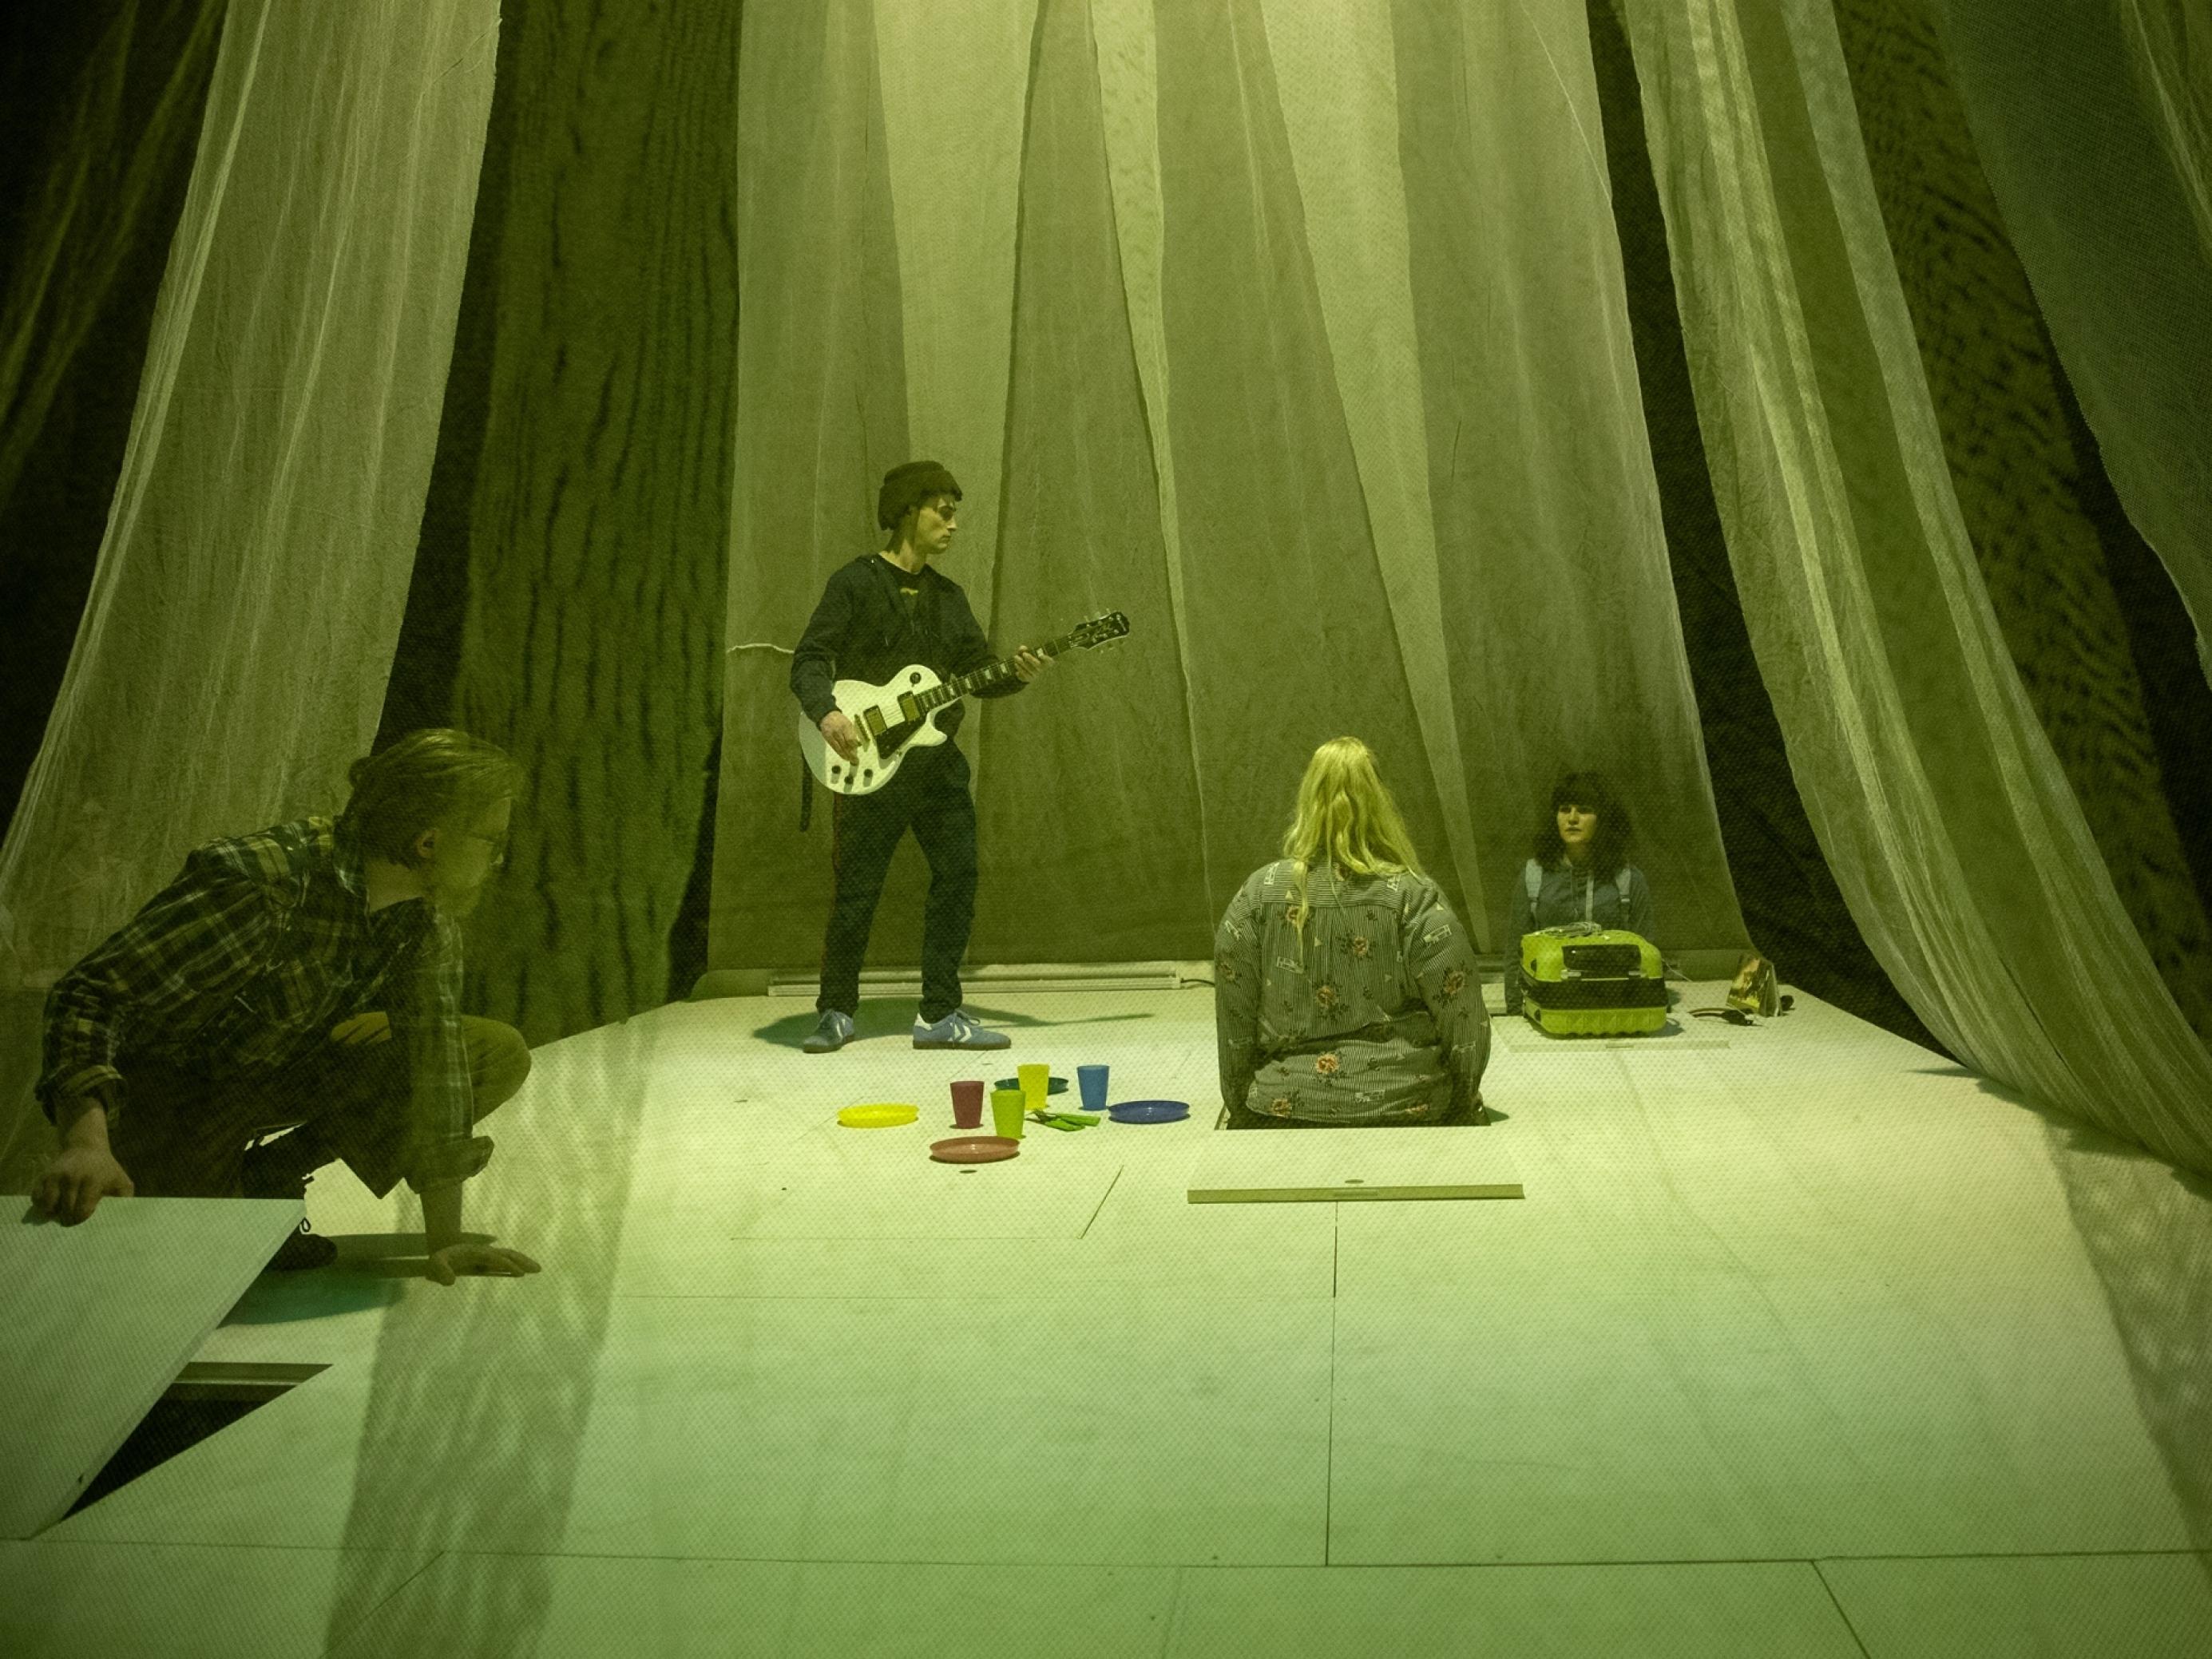 Zwei Darsteller und zwei Darstellerinnen spielen auf einer kleinen weißen Bühne, deren Bodenplatten man heben kann. Sie ist umgeben von transparenten Vorhängen. Das Licht ist grün.